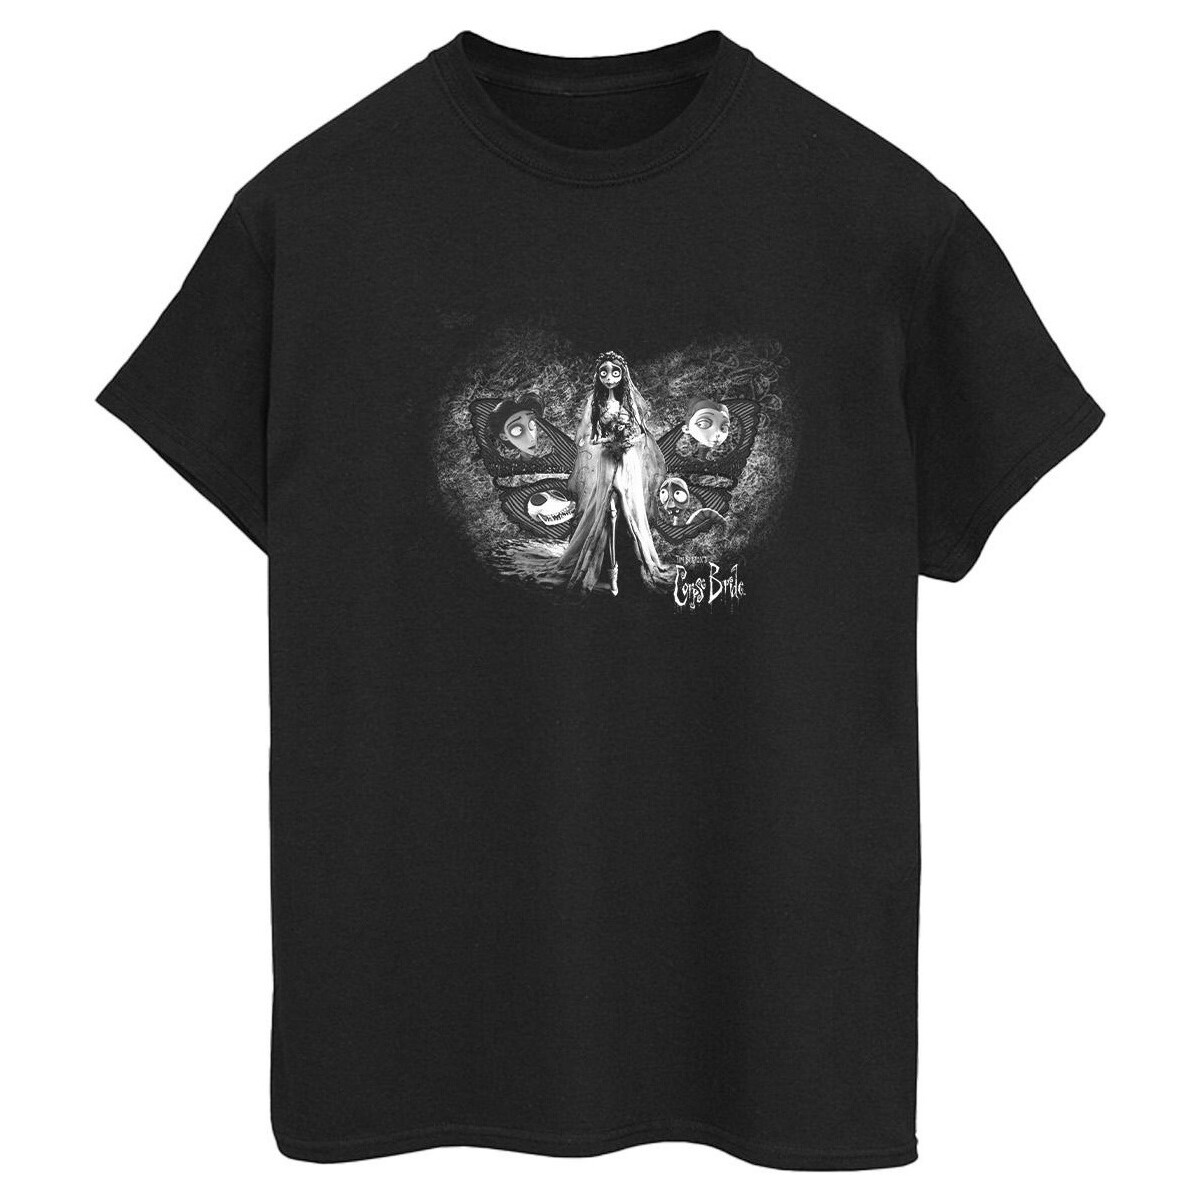 Vêtements Femme T-shirts manches longues Corpse Bride Emily Butterfly Noir